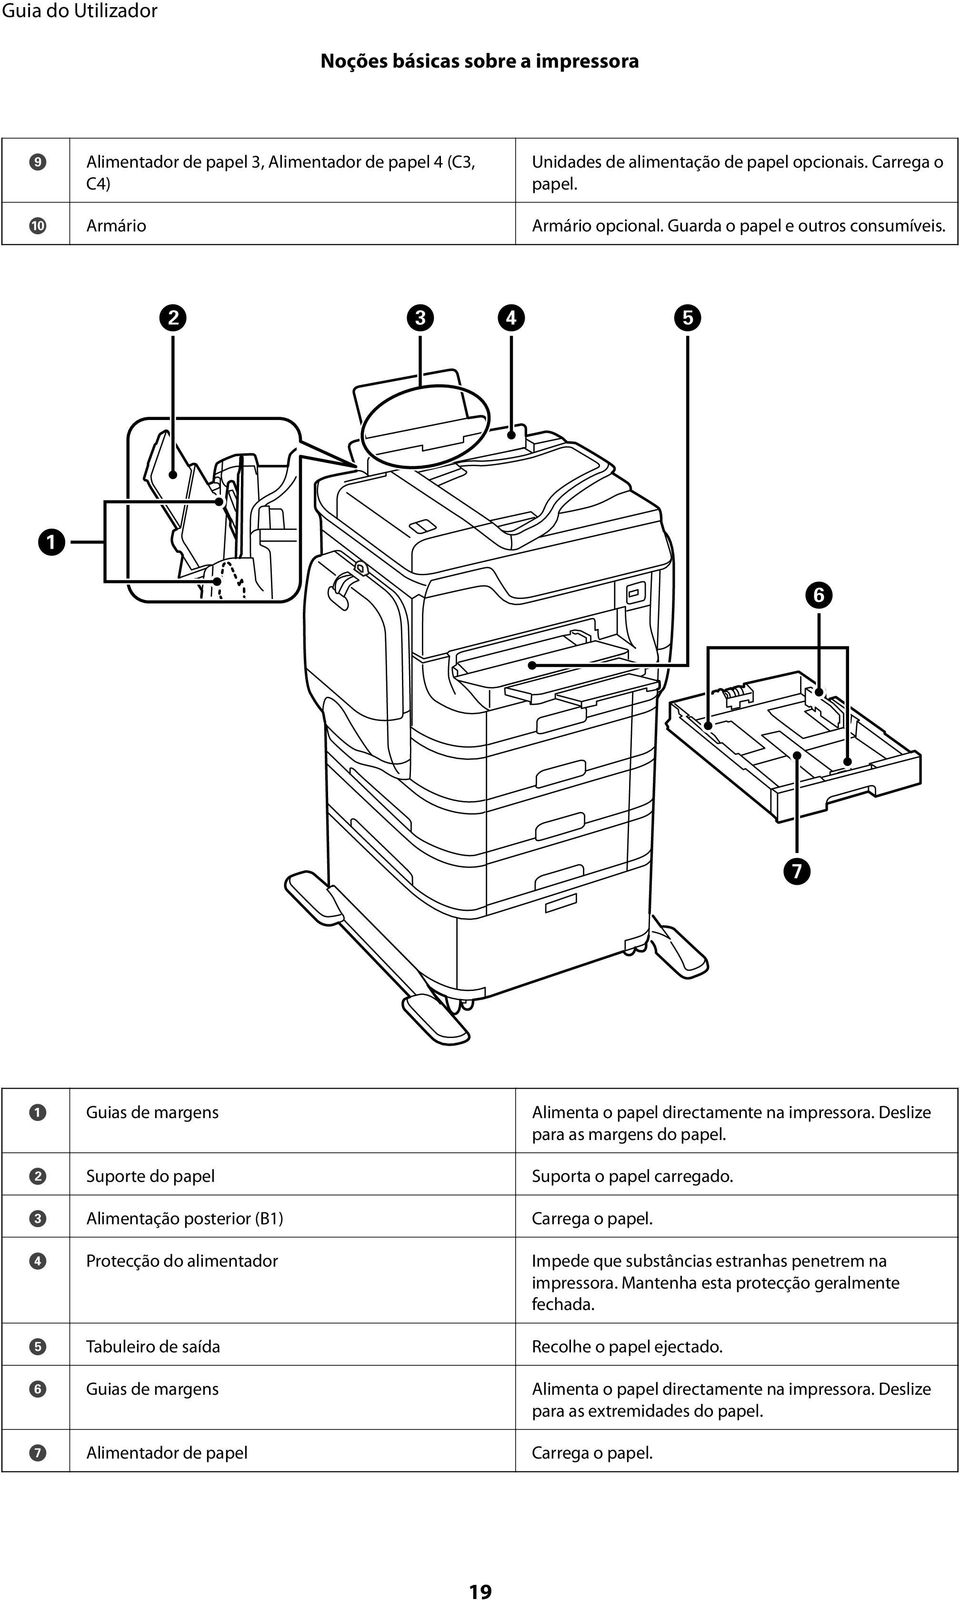 C Alimentação posterior (B1) Carrega o papel. D Protecção do alimentador Impede que substâncias estranhas penetrem na impressora. Mantenha esta protecção geralmente fechada.